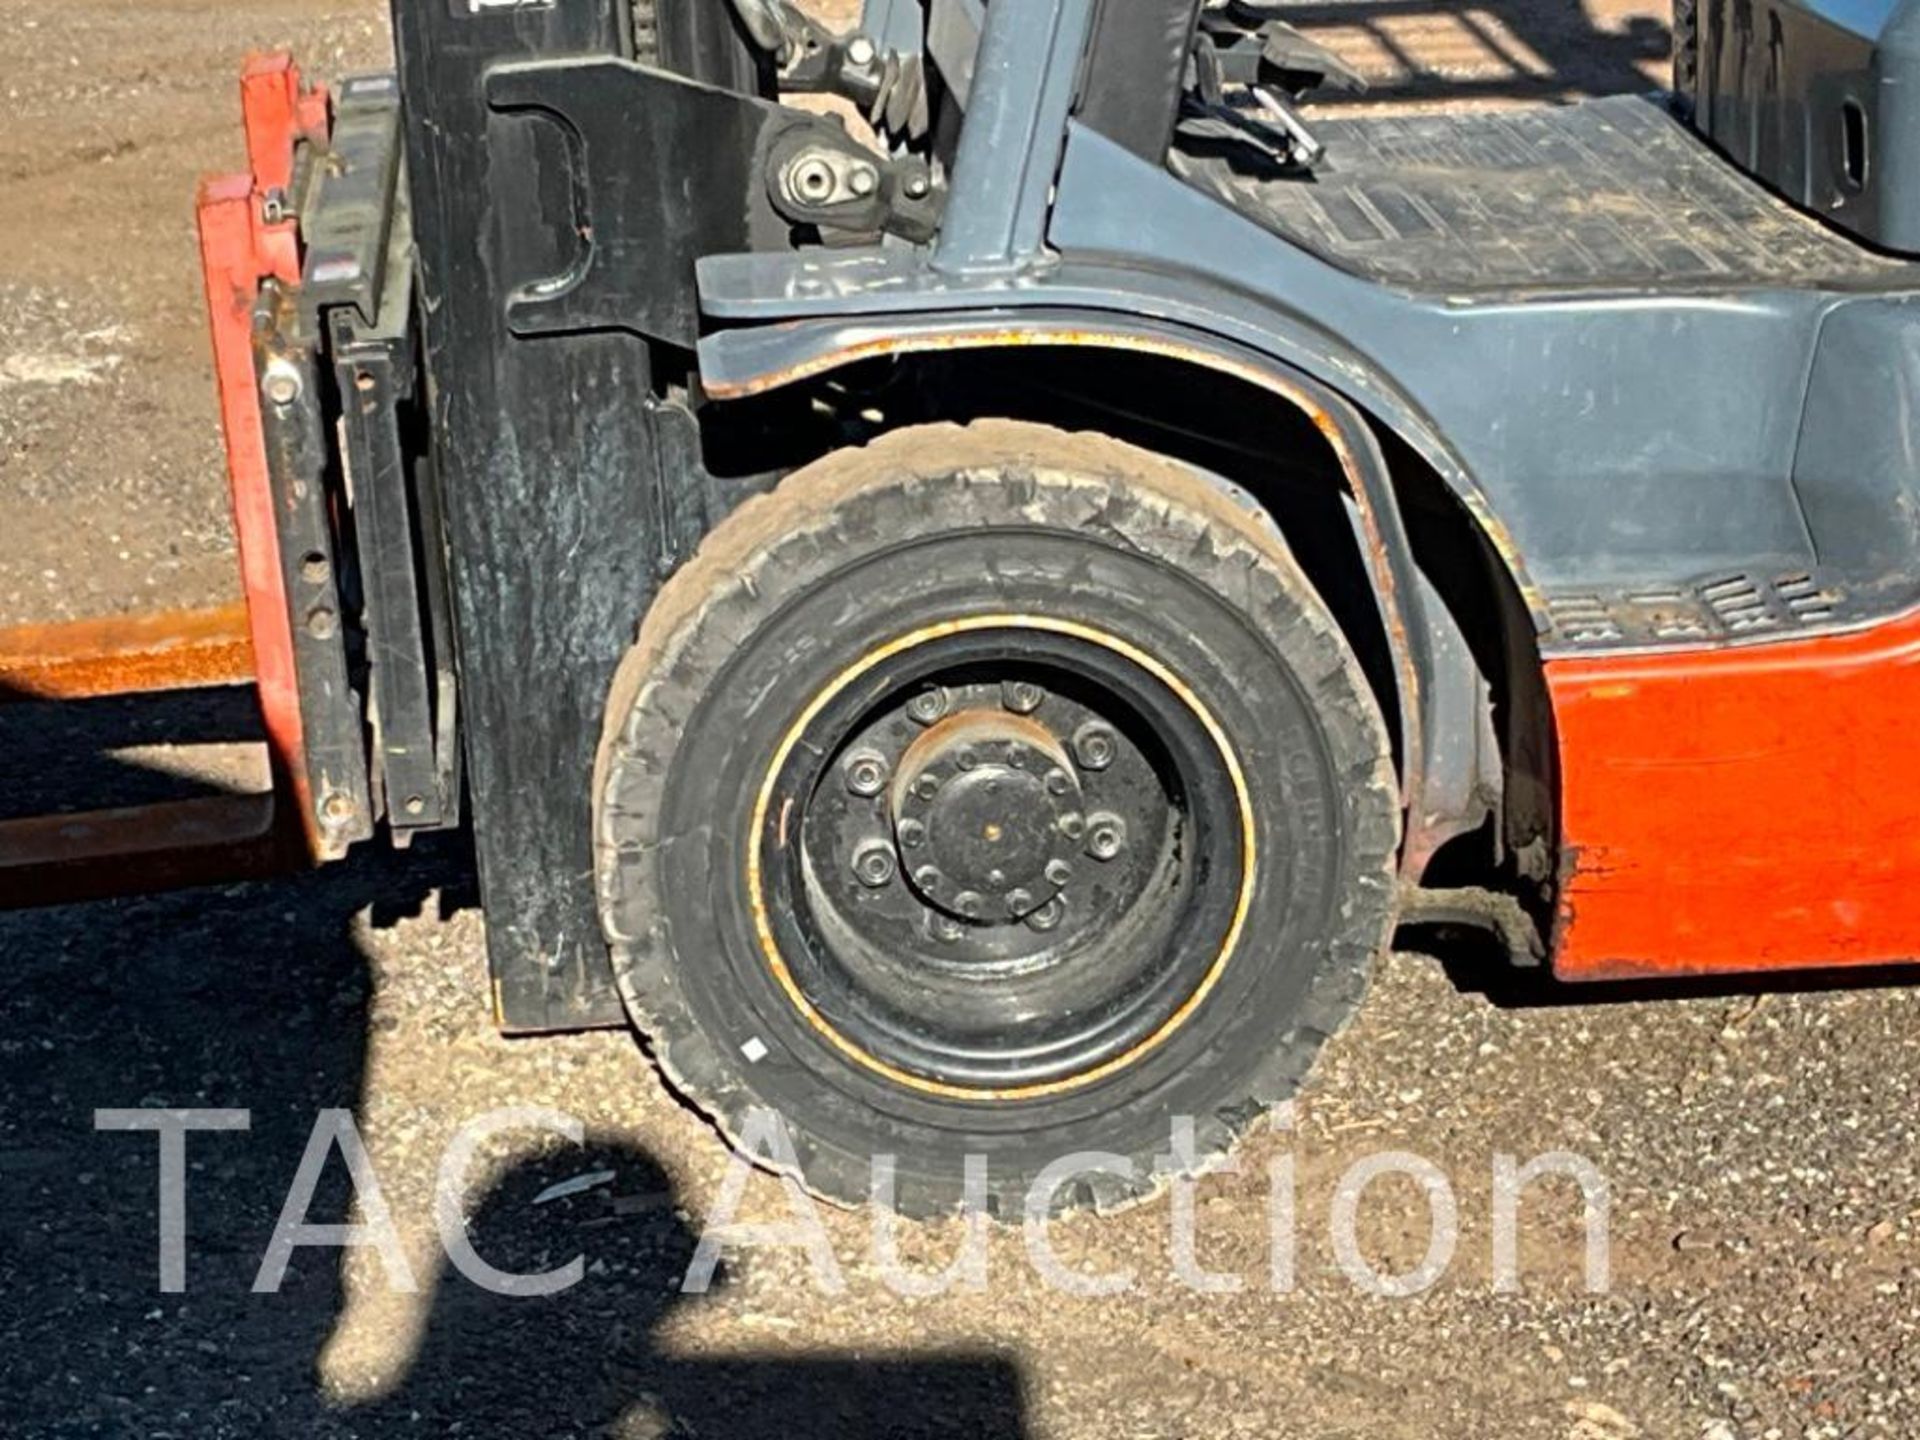 2018 Toyota 8FGU20 4000lb Forklift - Image 25 of 33